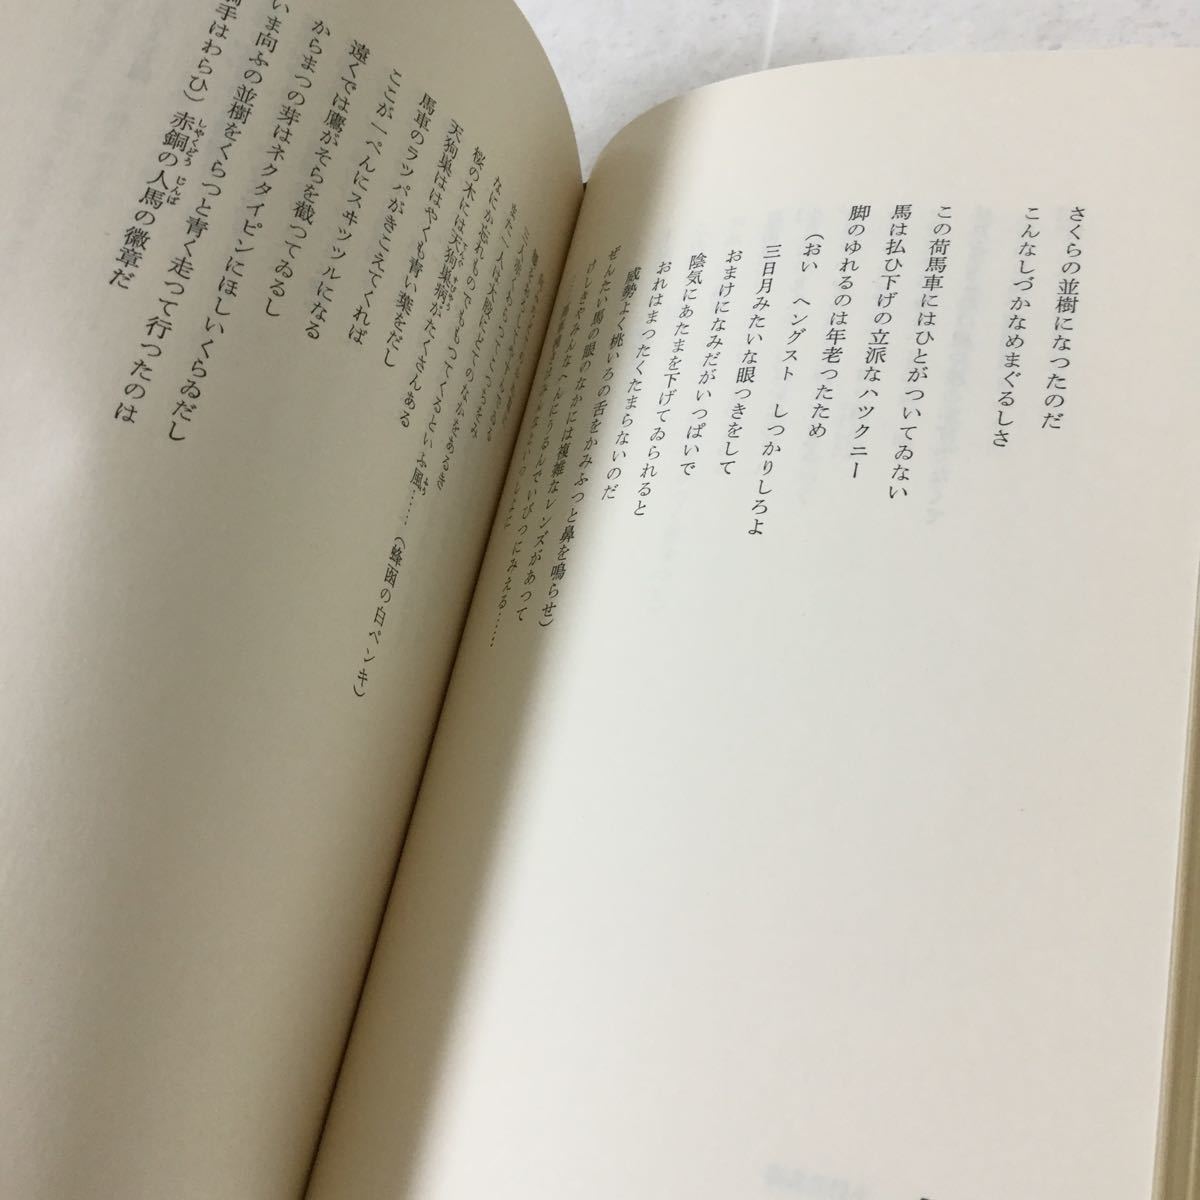 b23 宮沢賢治全集 第二巻 1979年6月15日初版第一刷発行 筑摩書房 小説 日本作家 日本小説 本 _画像5